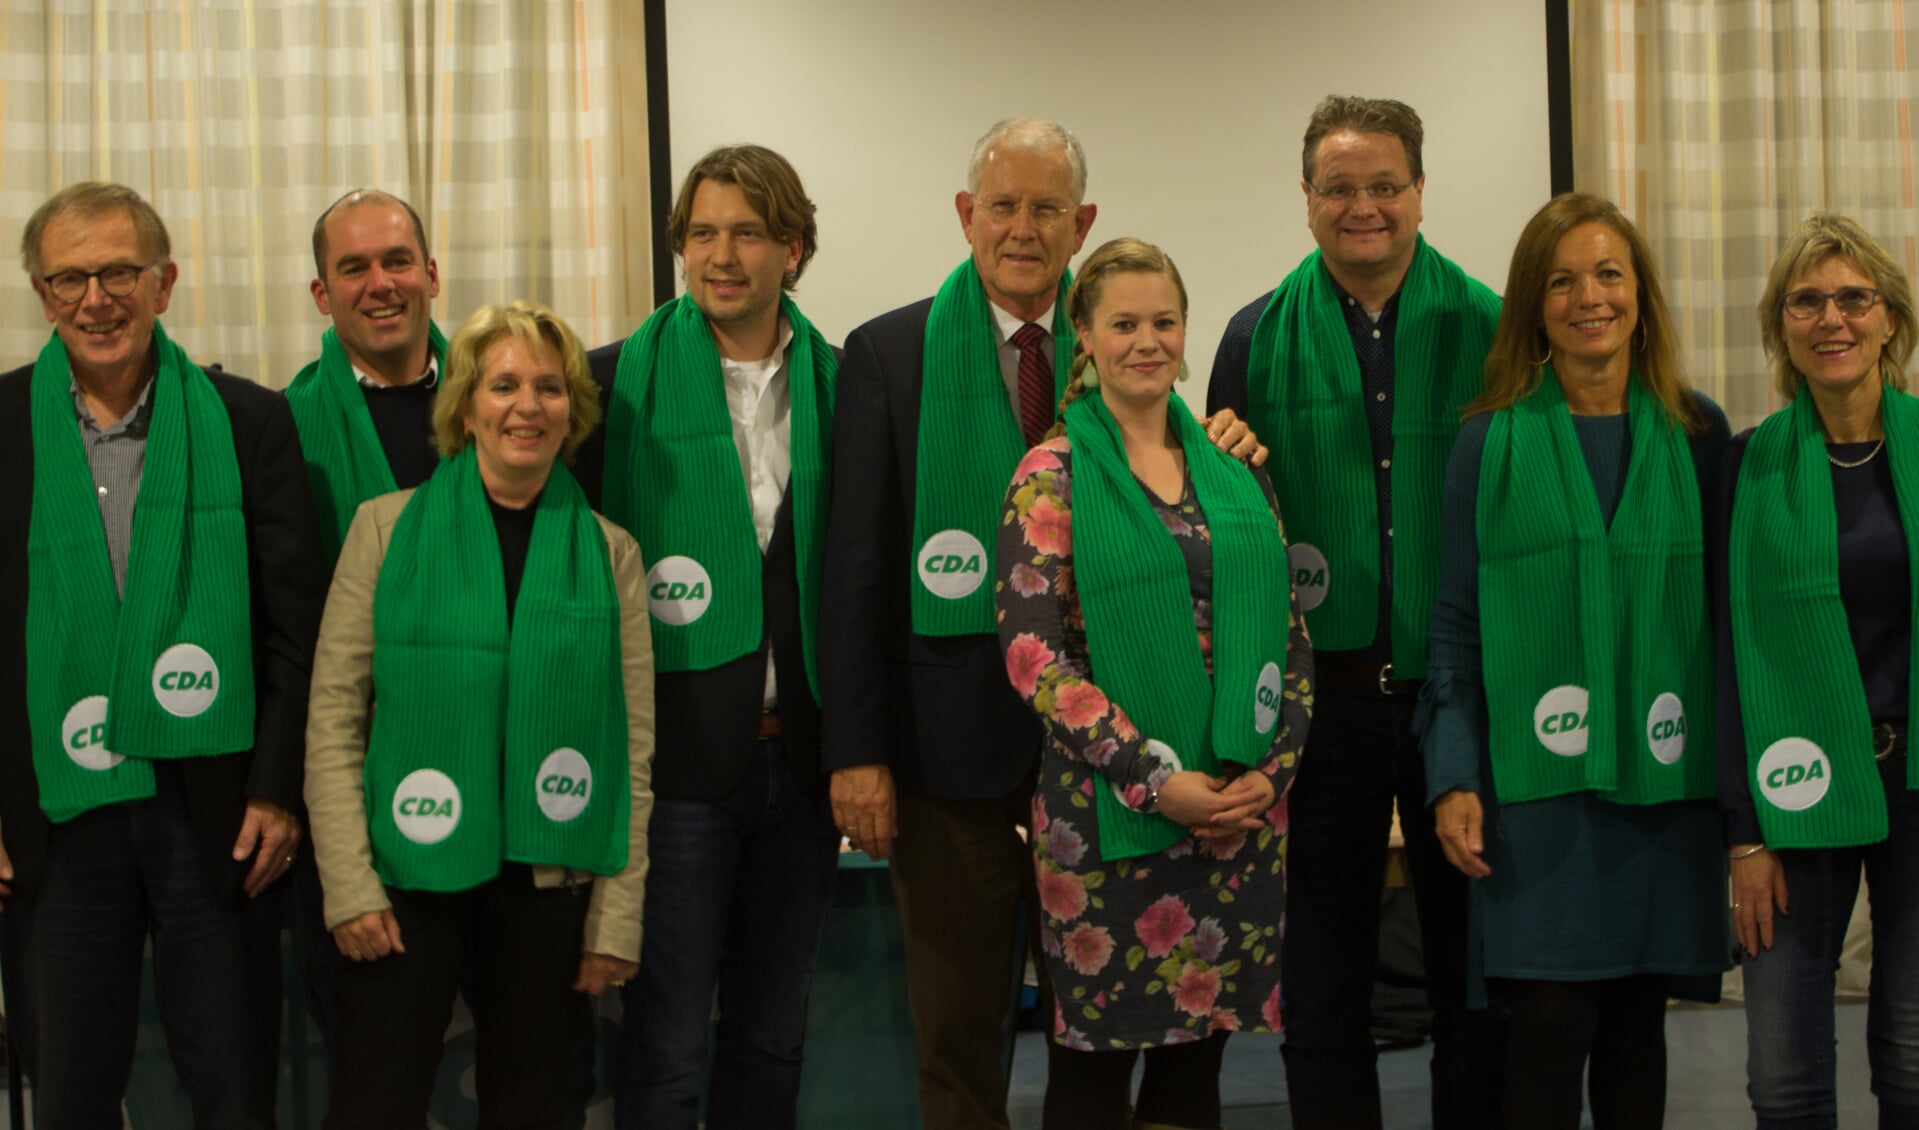 De eerste negen kandidaten van CDA Teylingen, met in het midden lijsttrekker Peter Scholten. | Foto: pr.